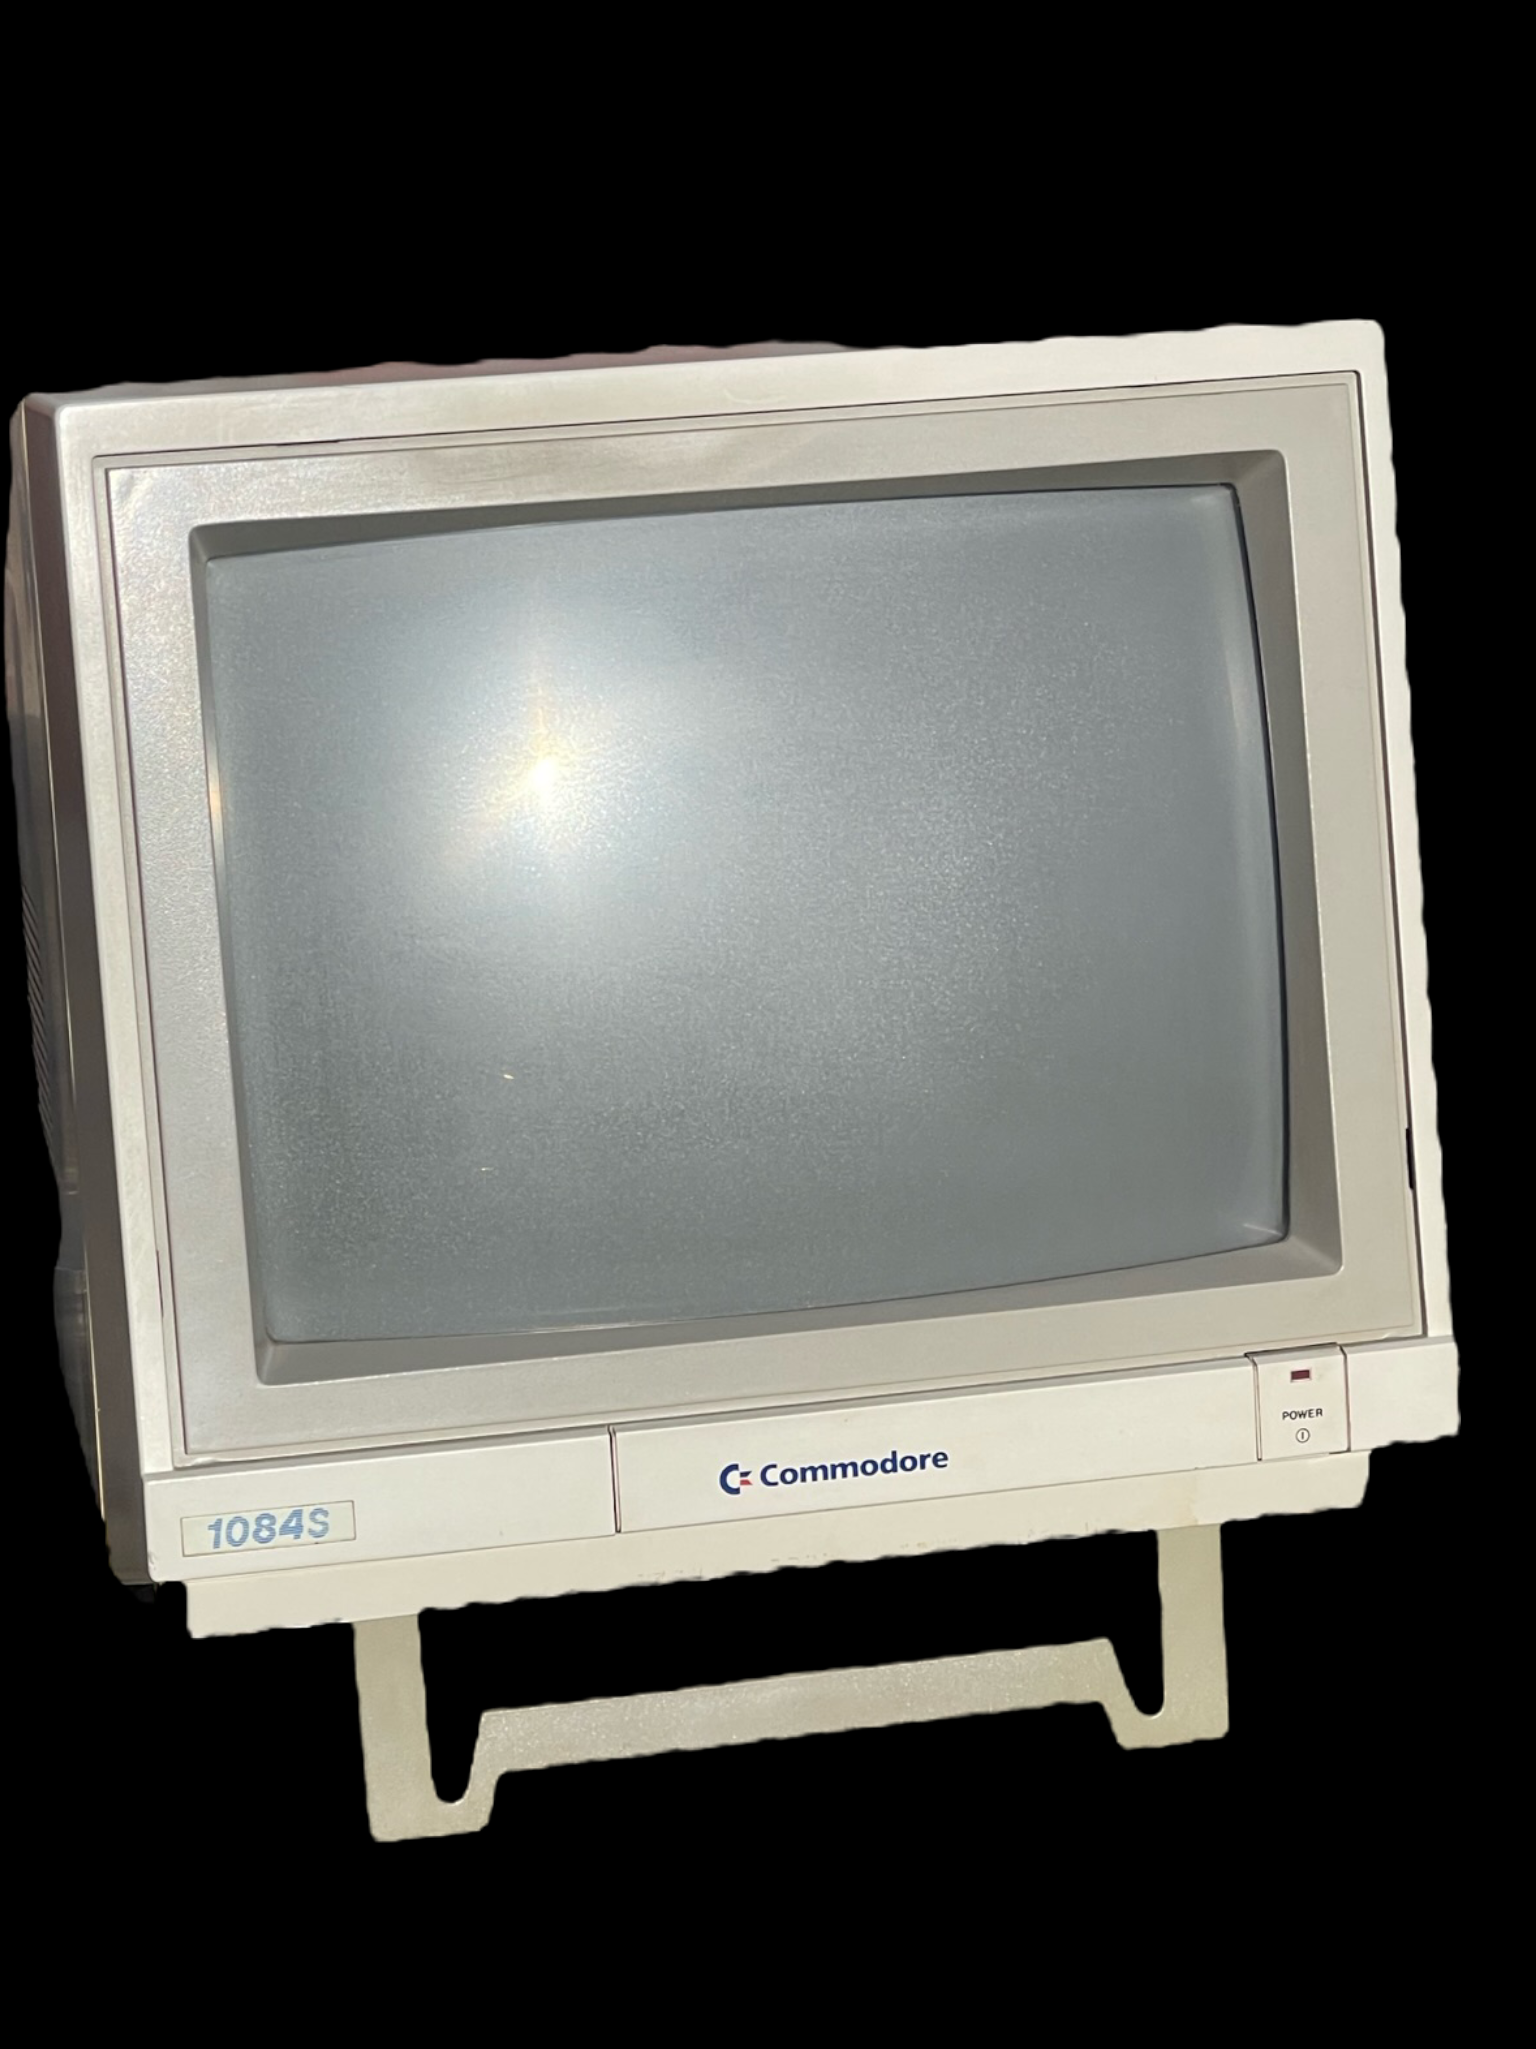 Commodore 1084S